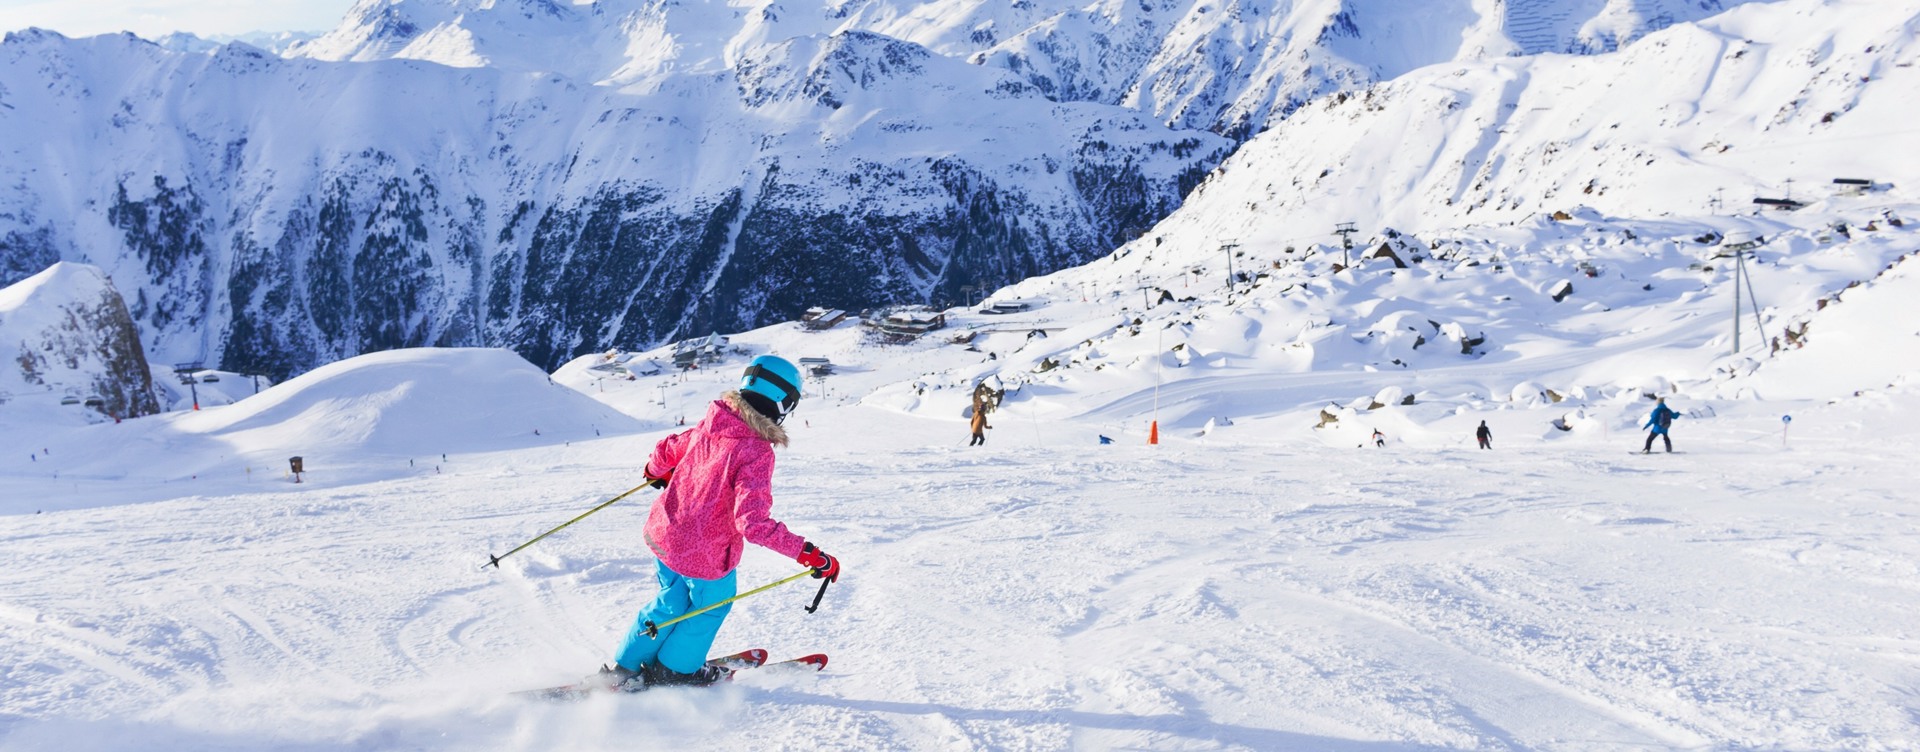 Beleef een onvergetelijke skivakantie met de hele familie
in de Franse Alpen